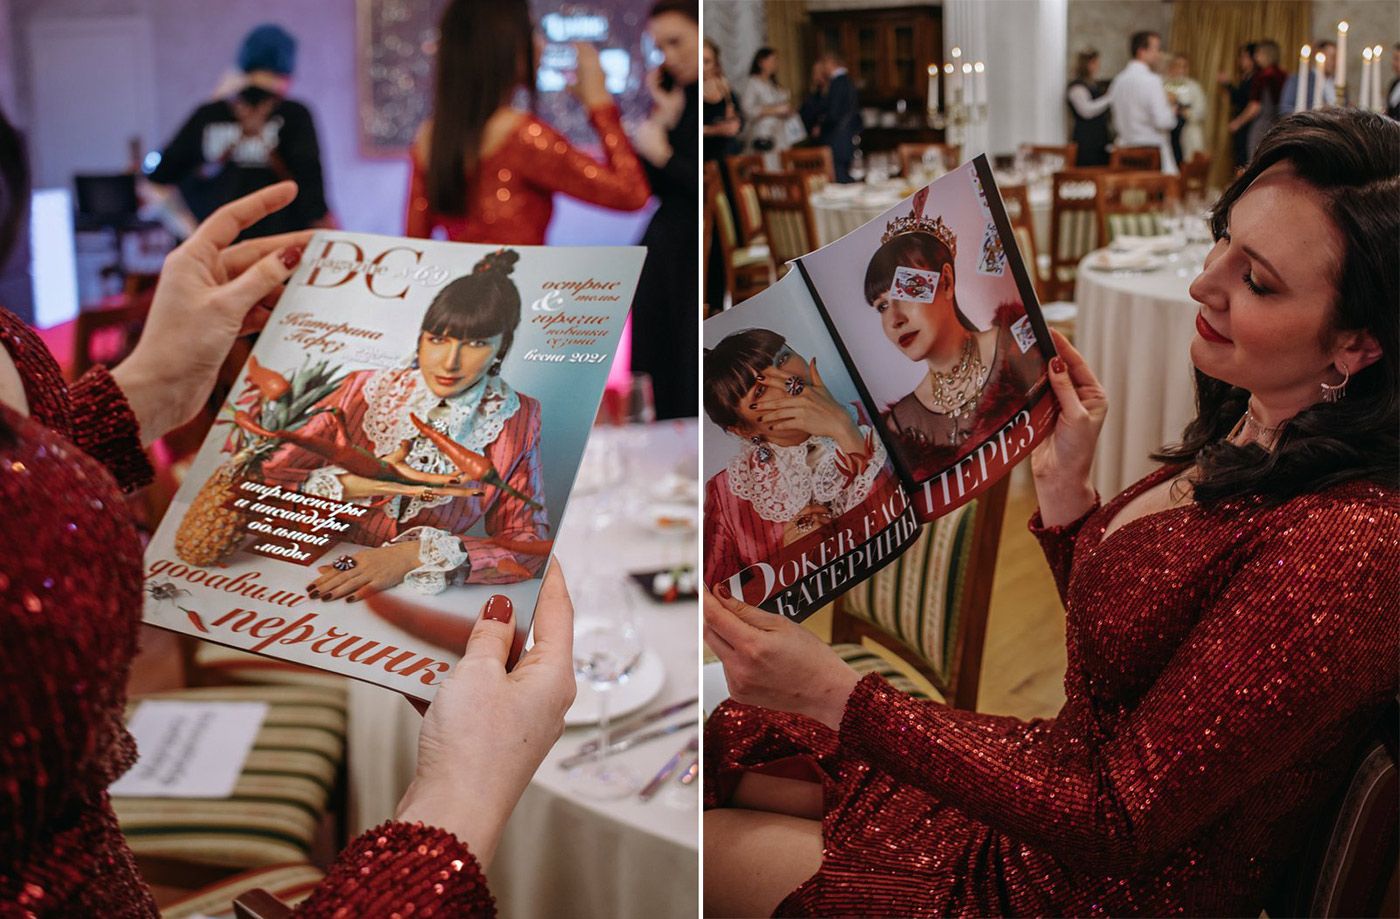 Катерина Перез держит номер журнала DC Magazine с ее фотографией на обложке